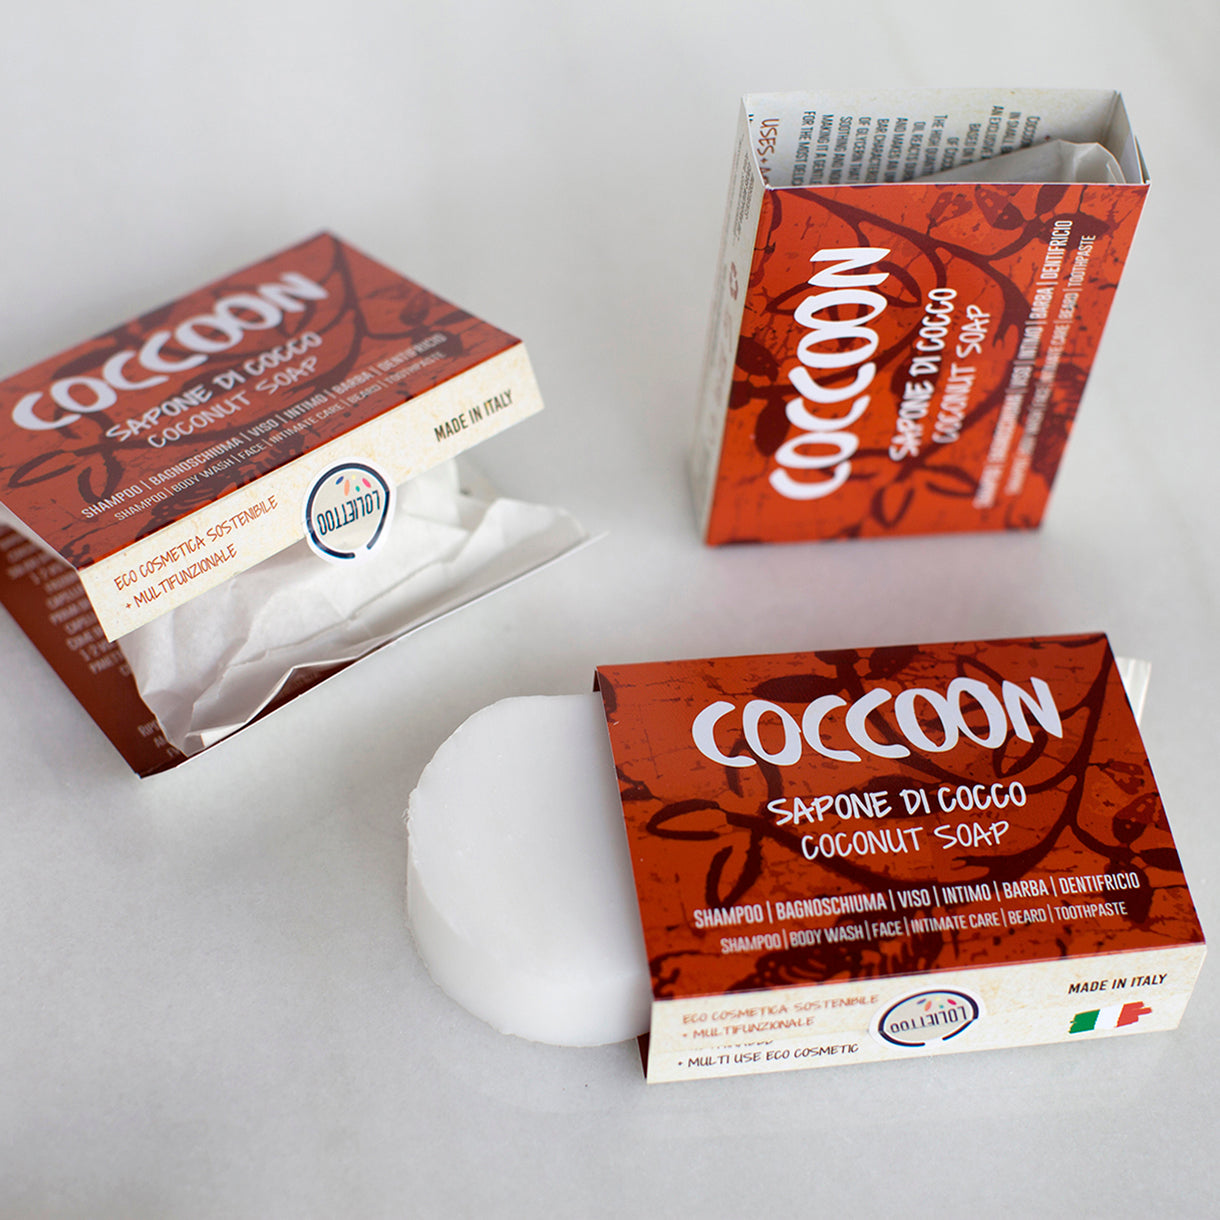 Confezioni di sapone solido Coccoon parzialmente scartate